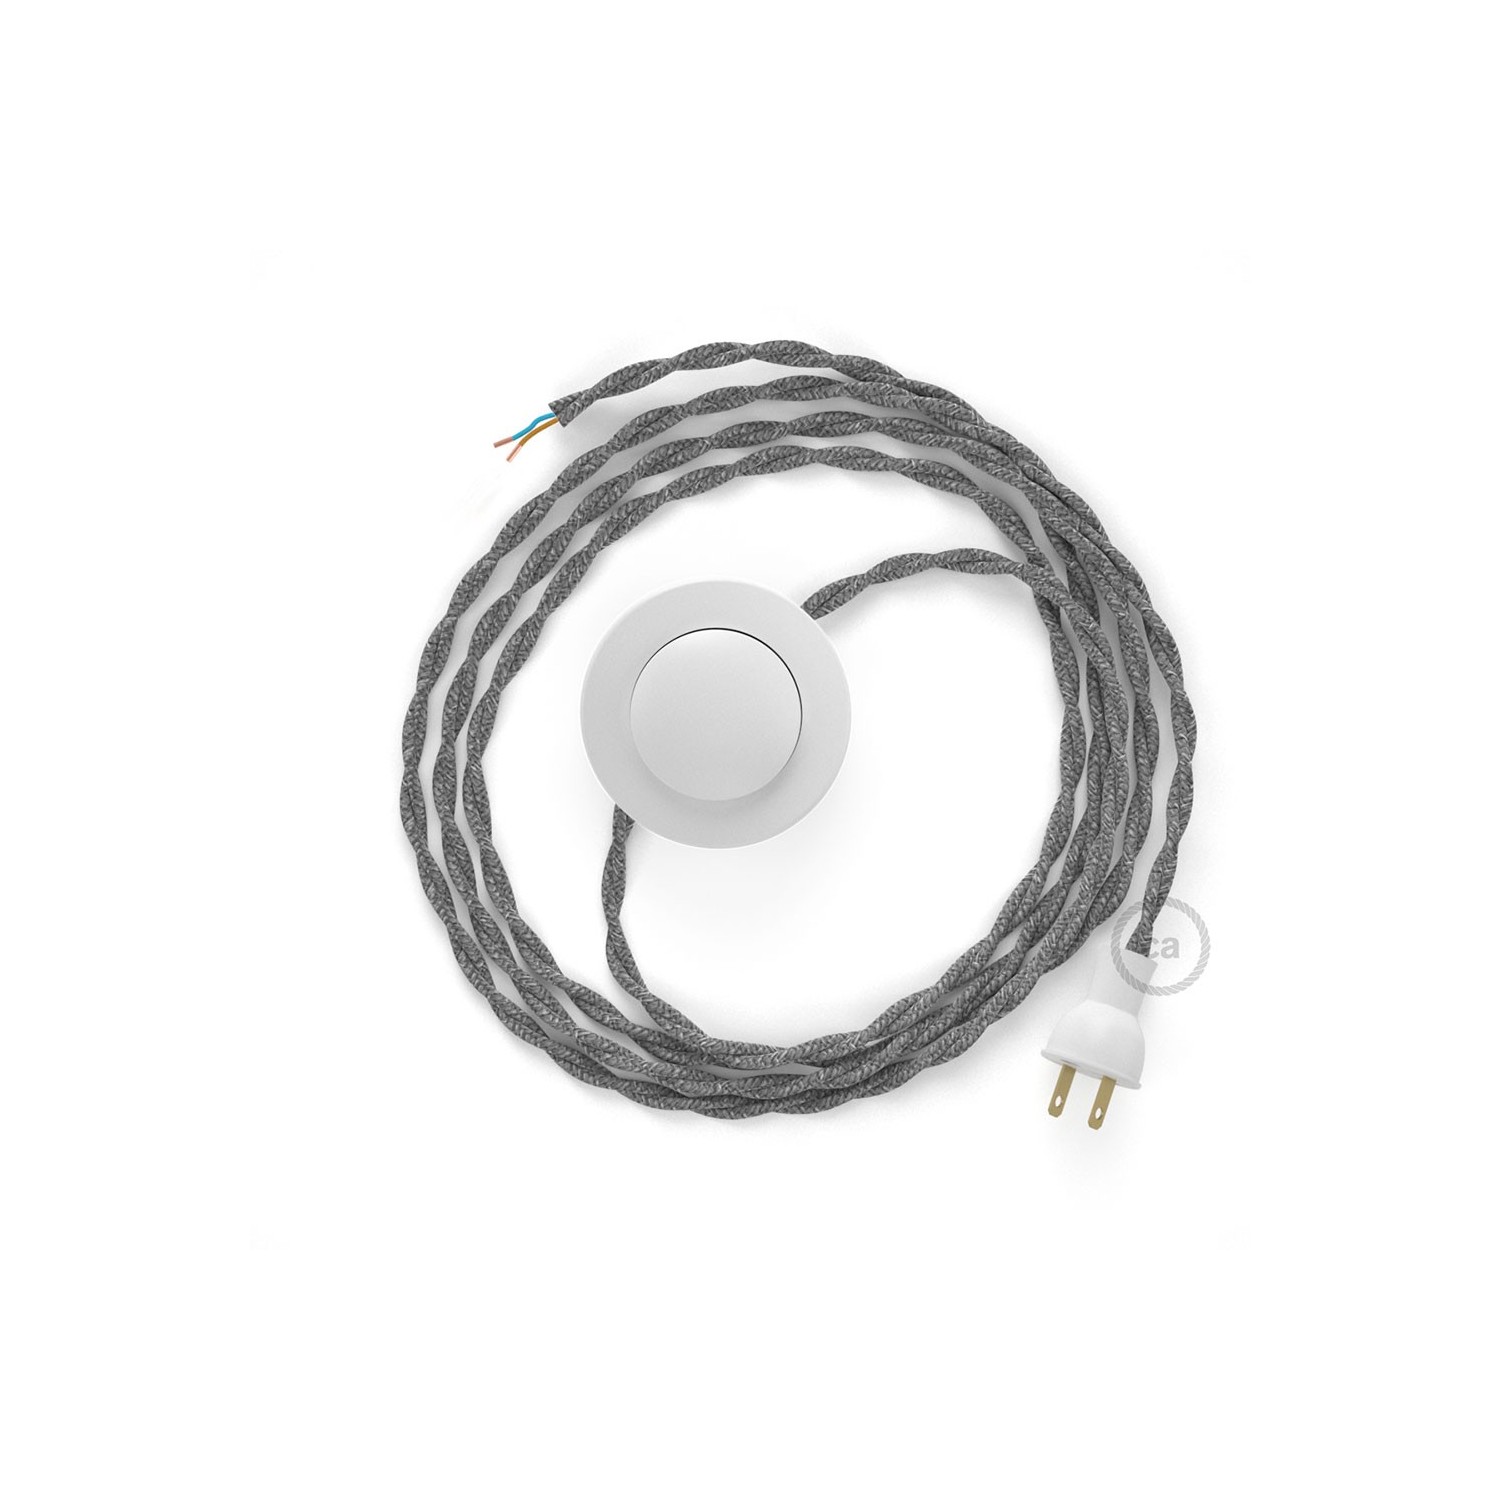 Cableado para lámpara de piso, cable TN02 Lino Natural Gris 3 m. Elige tu el color de la clavija y del interruptor!